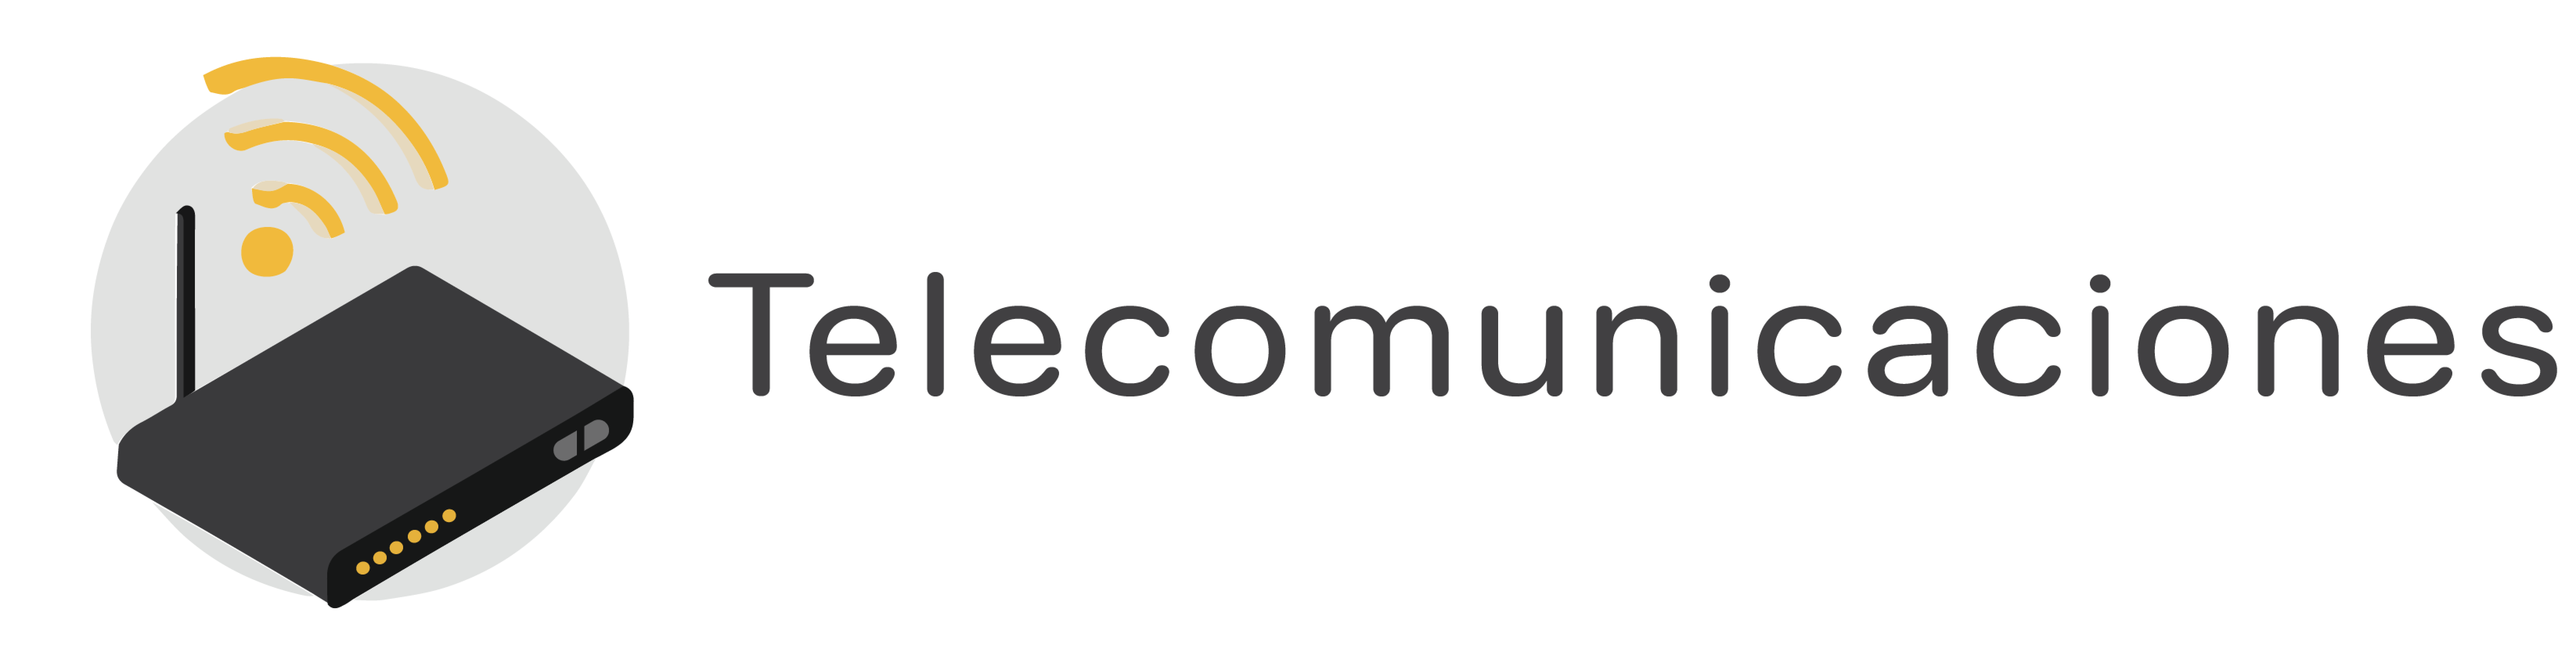 Logo_Telecomunicaciones_enlacesTIC